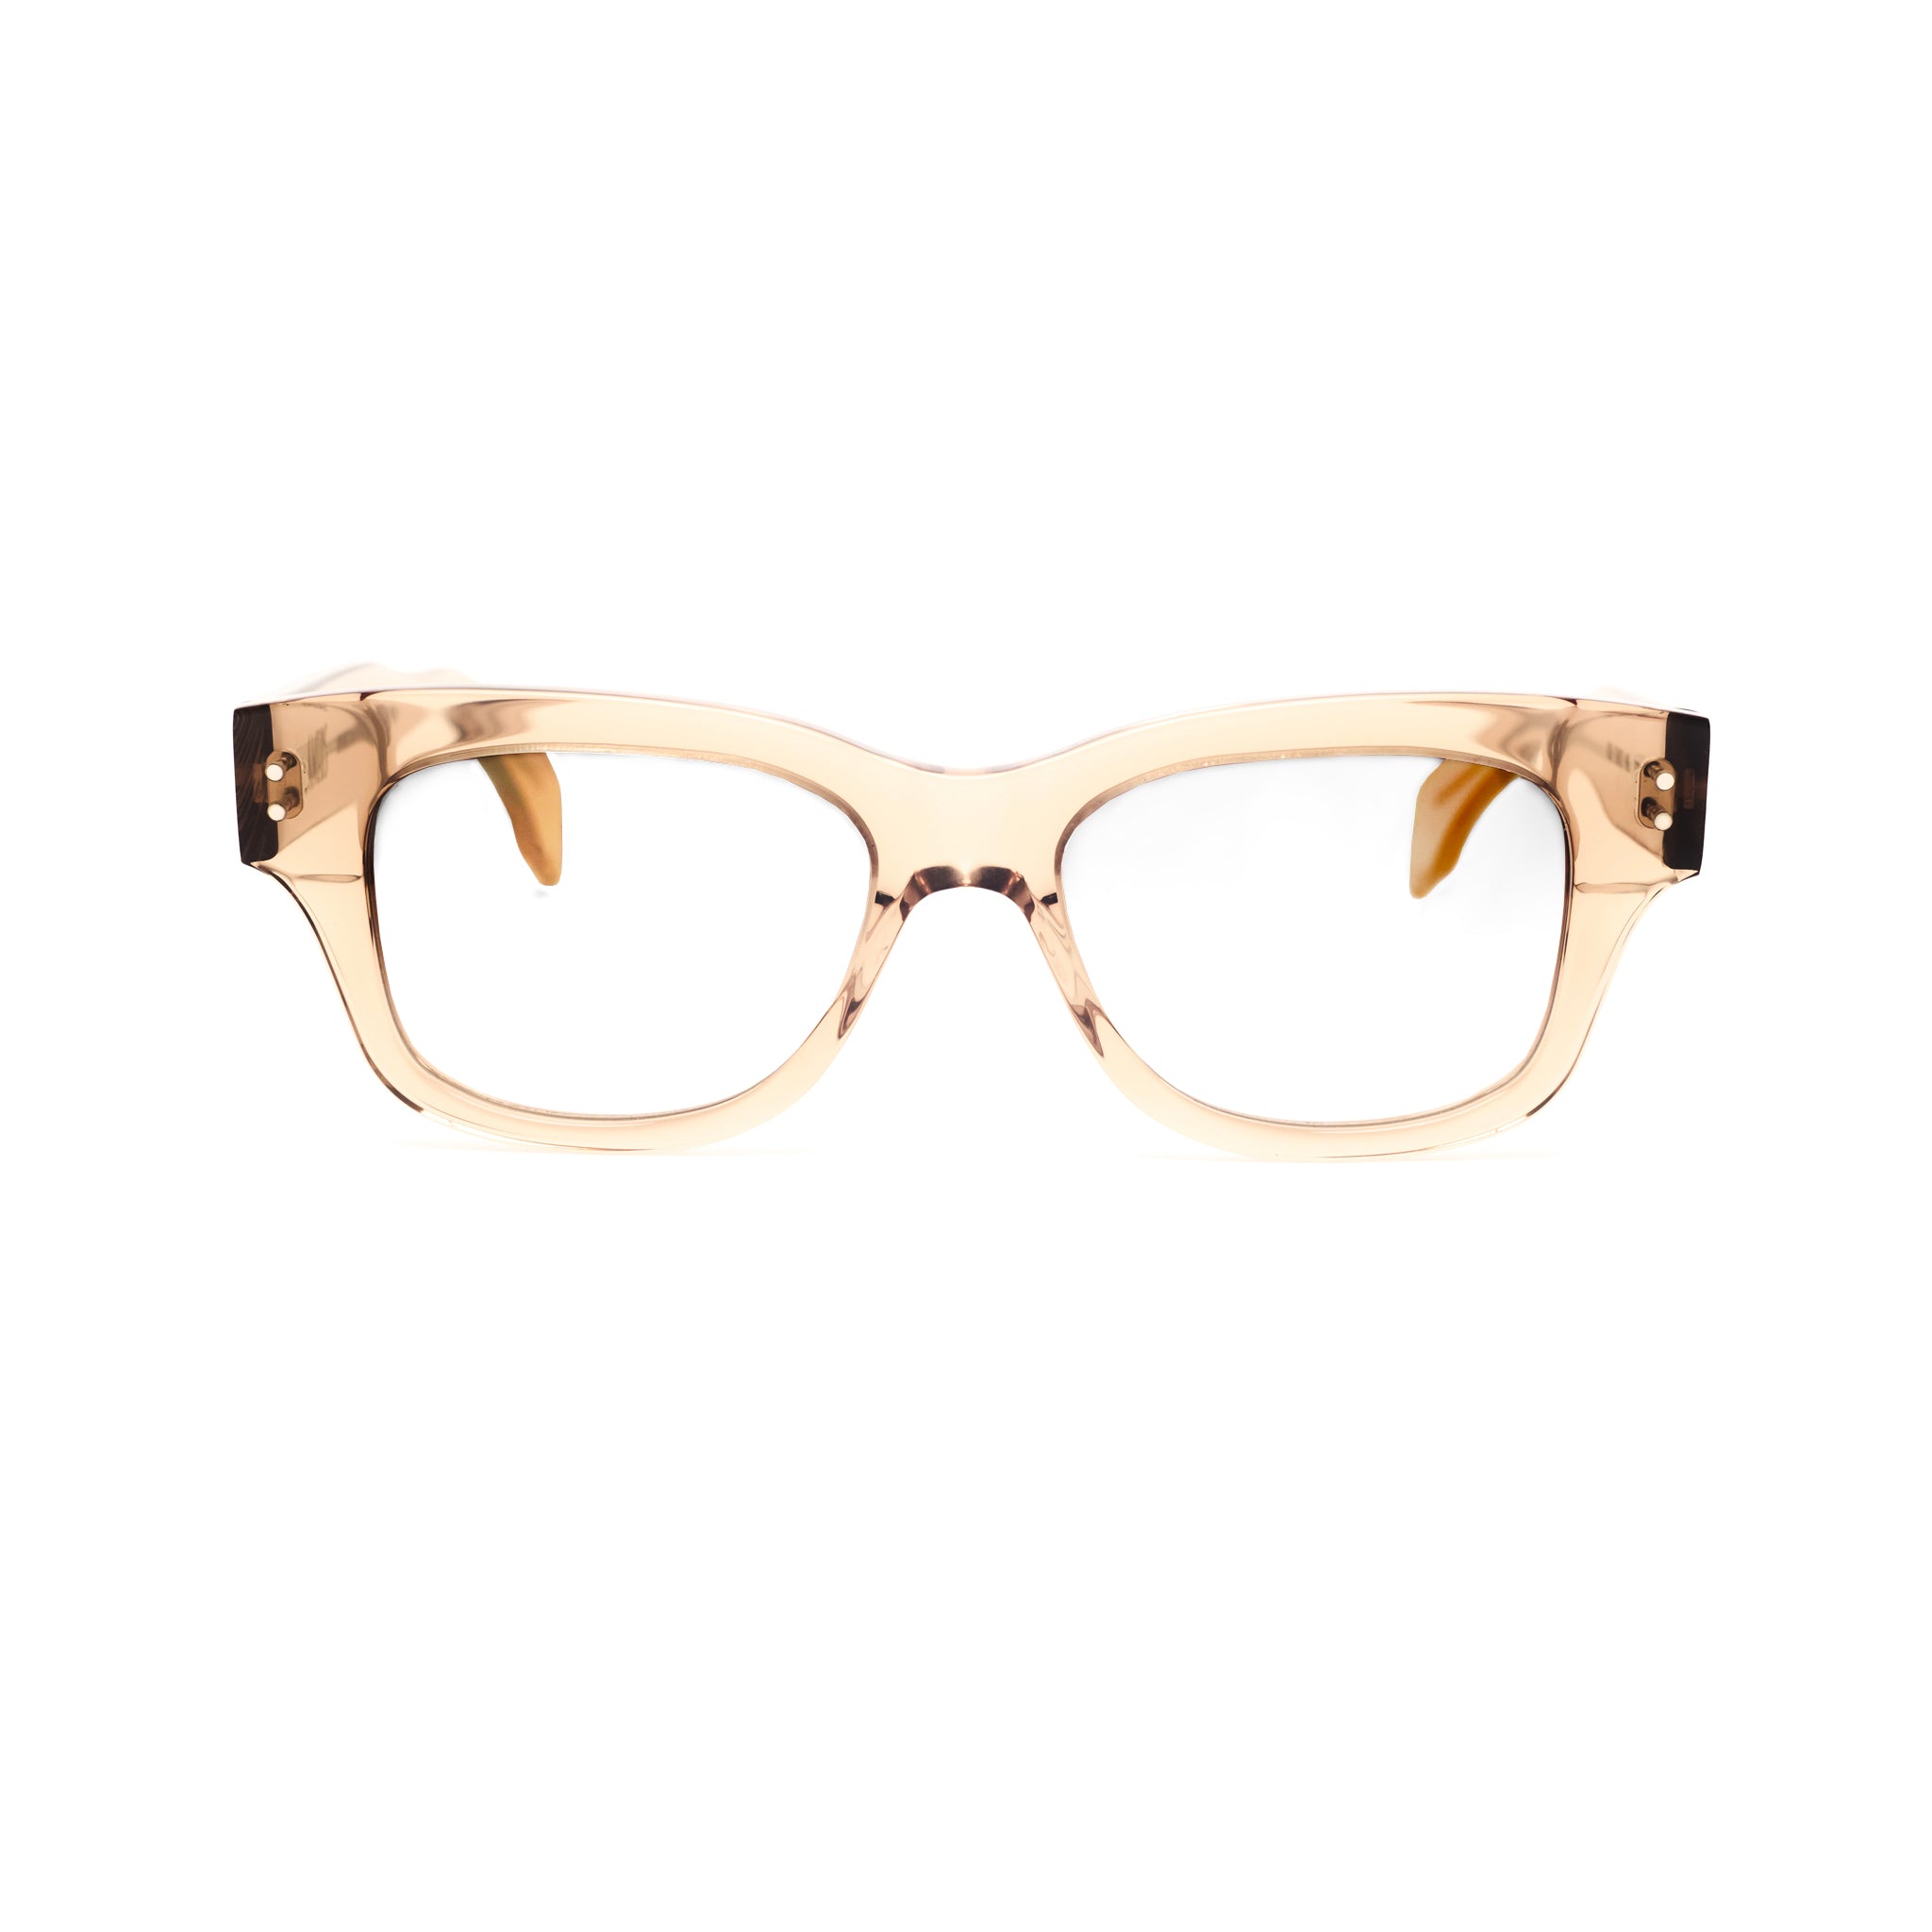 Ameos Eyewear Lou model optical. Beige transparent frames with brown lenses. Front view temples crossed. Genderless, gender neutral eyewear